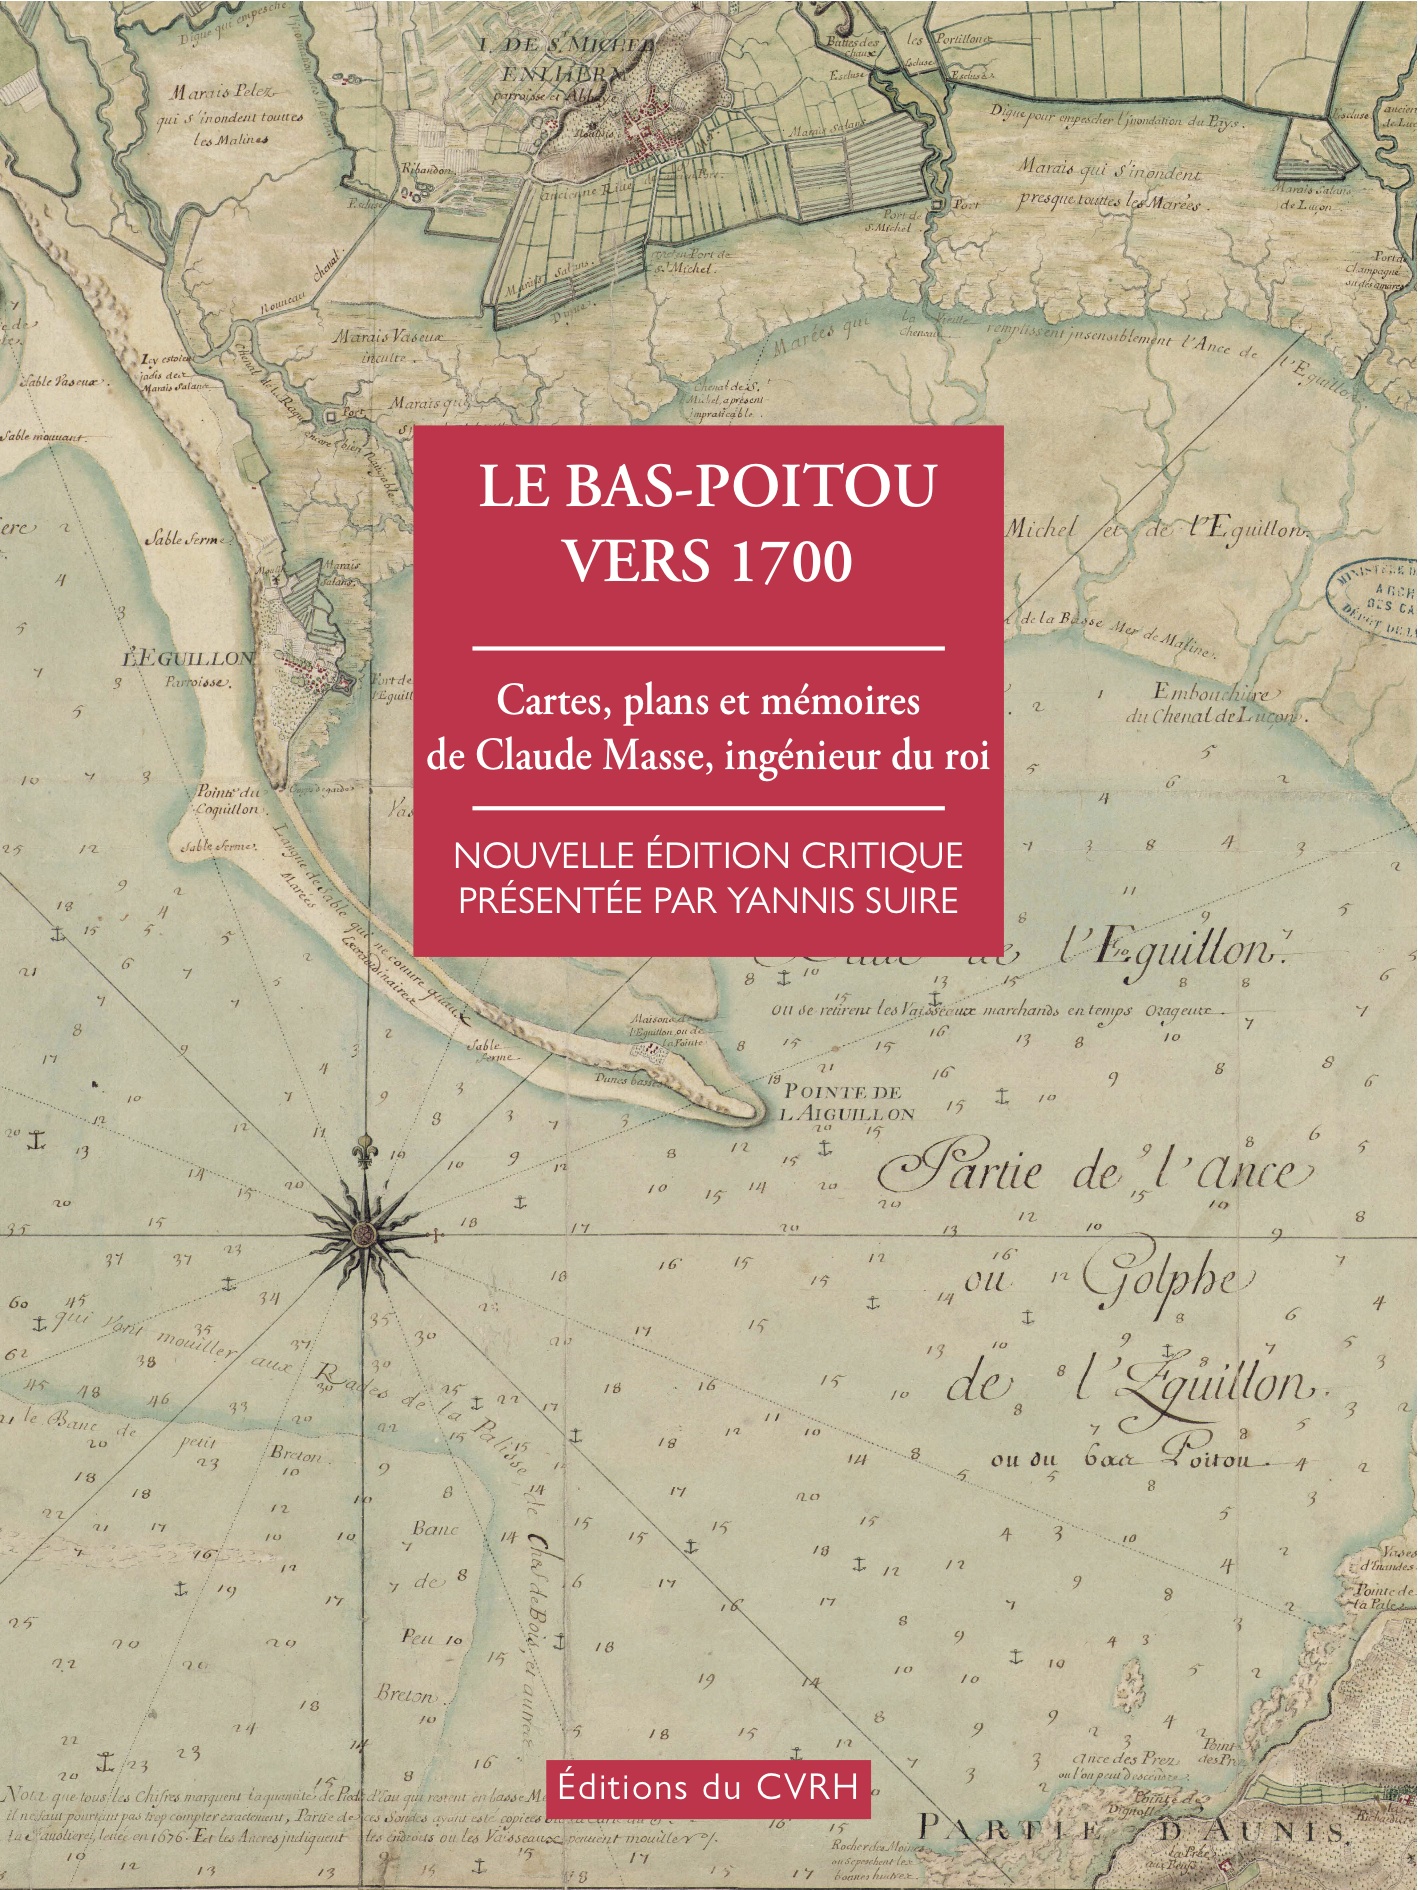 Le Bas-Poitou vers 1700. Cartes, plans et mémoires de Claude Masse, ingénieur du roi, 2017, 328 p.